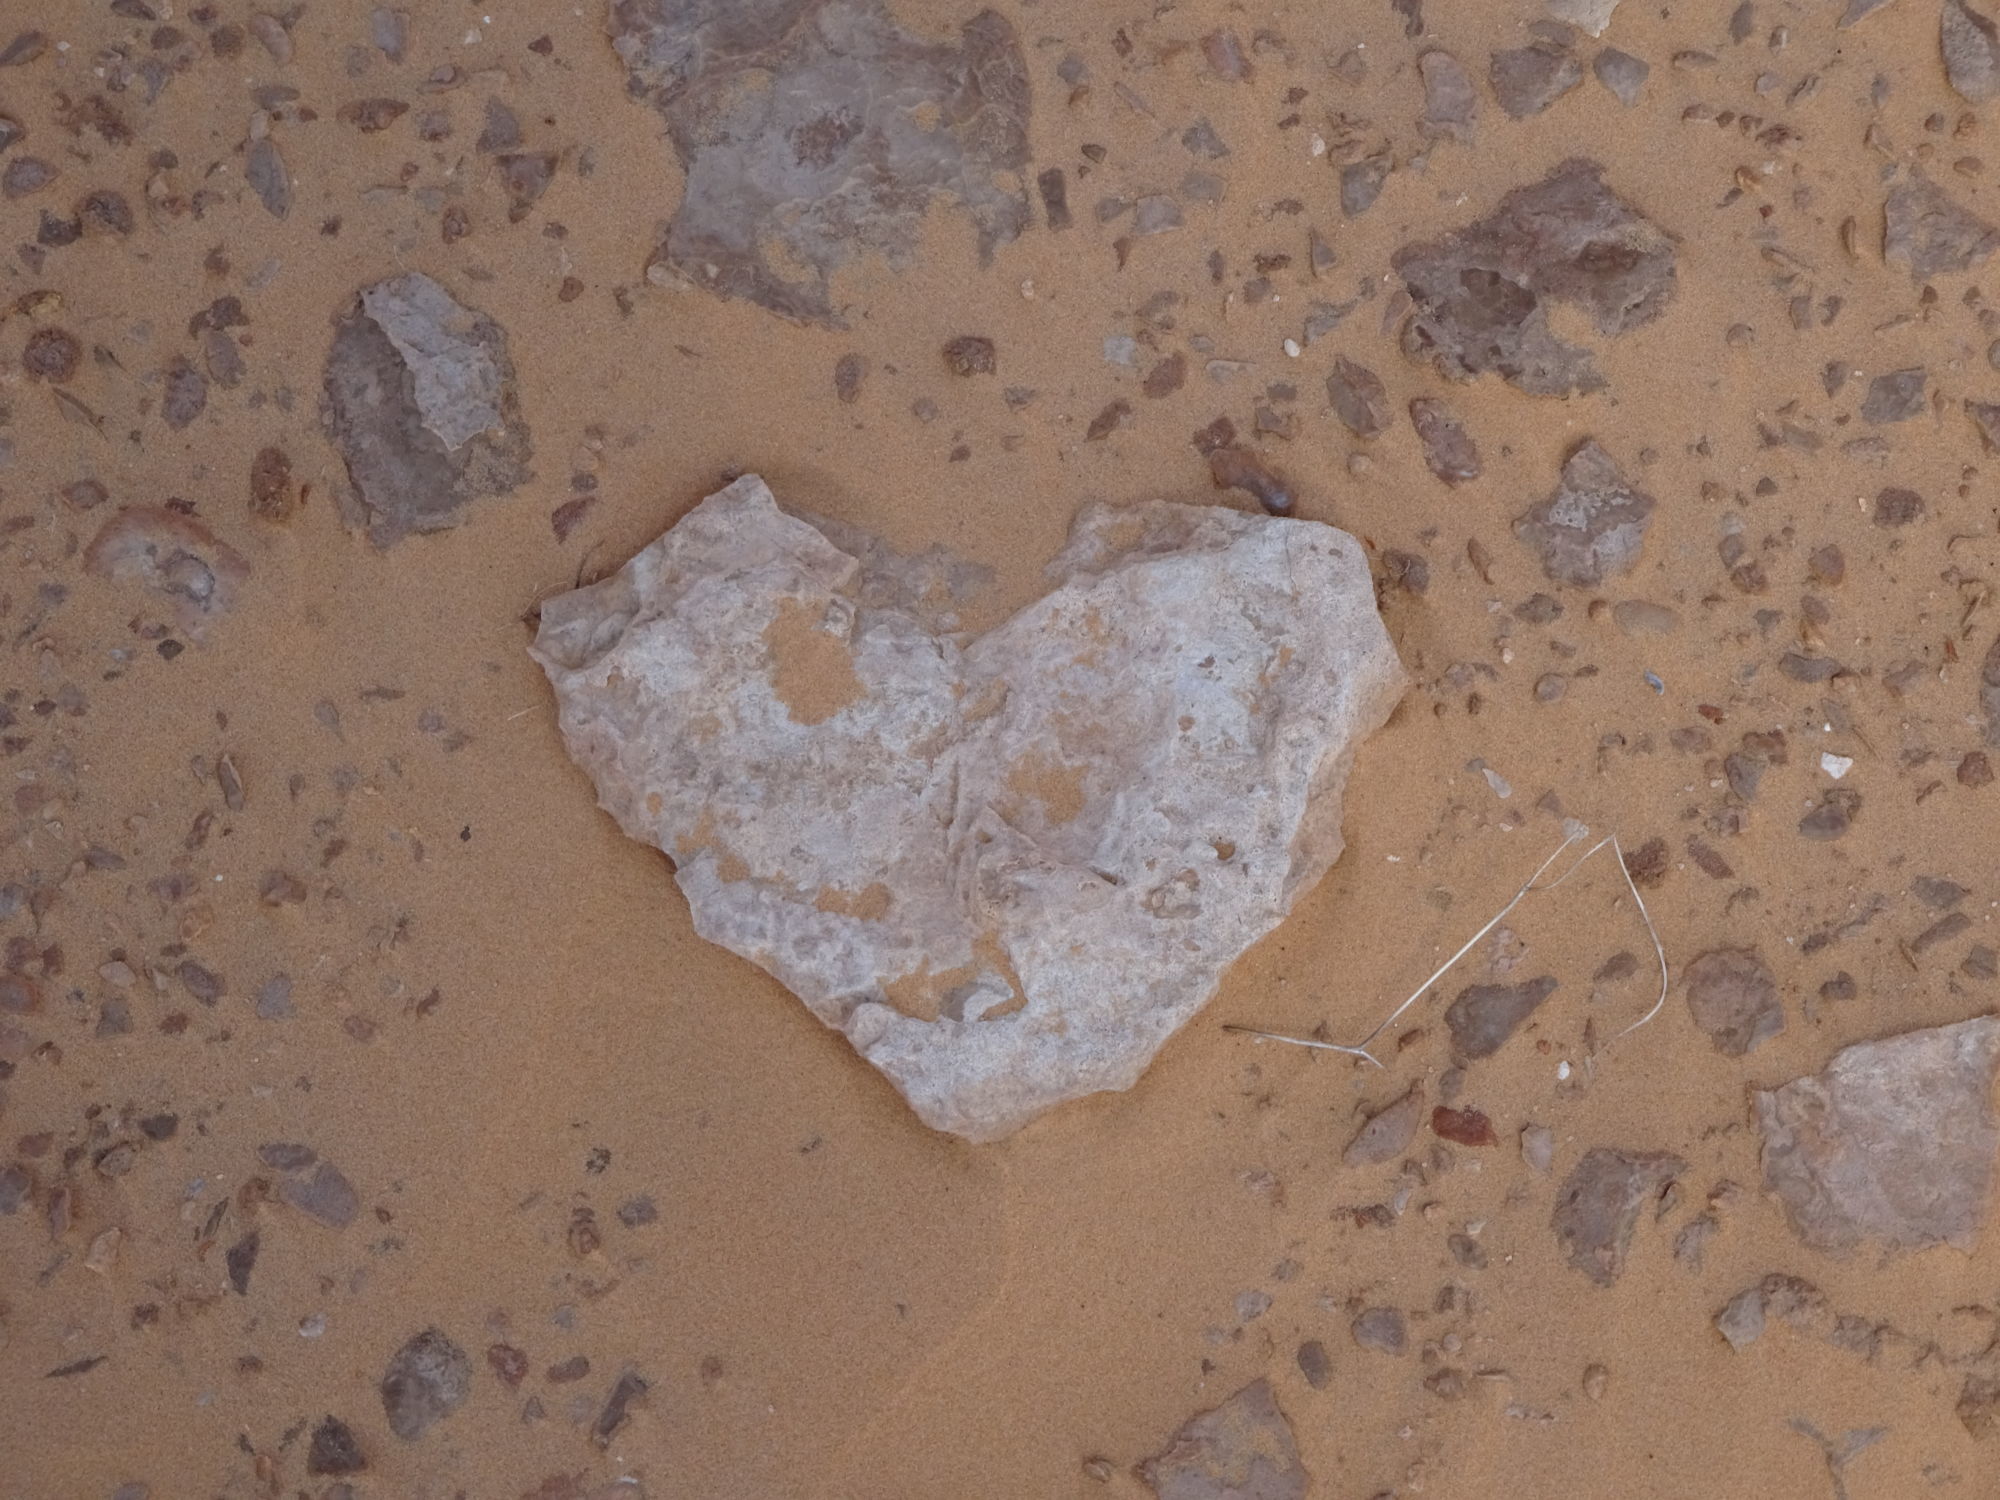 srdce v písku Sahary